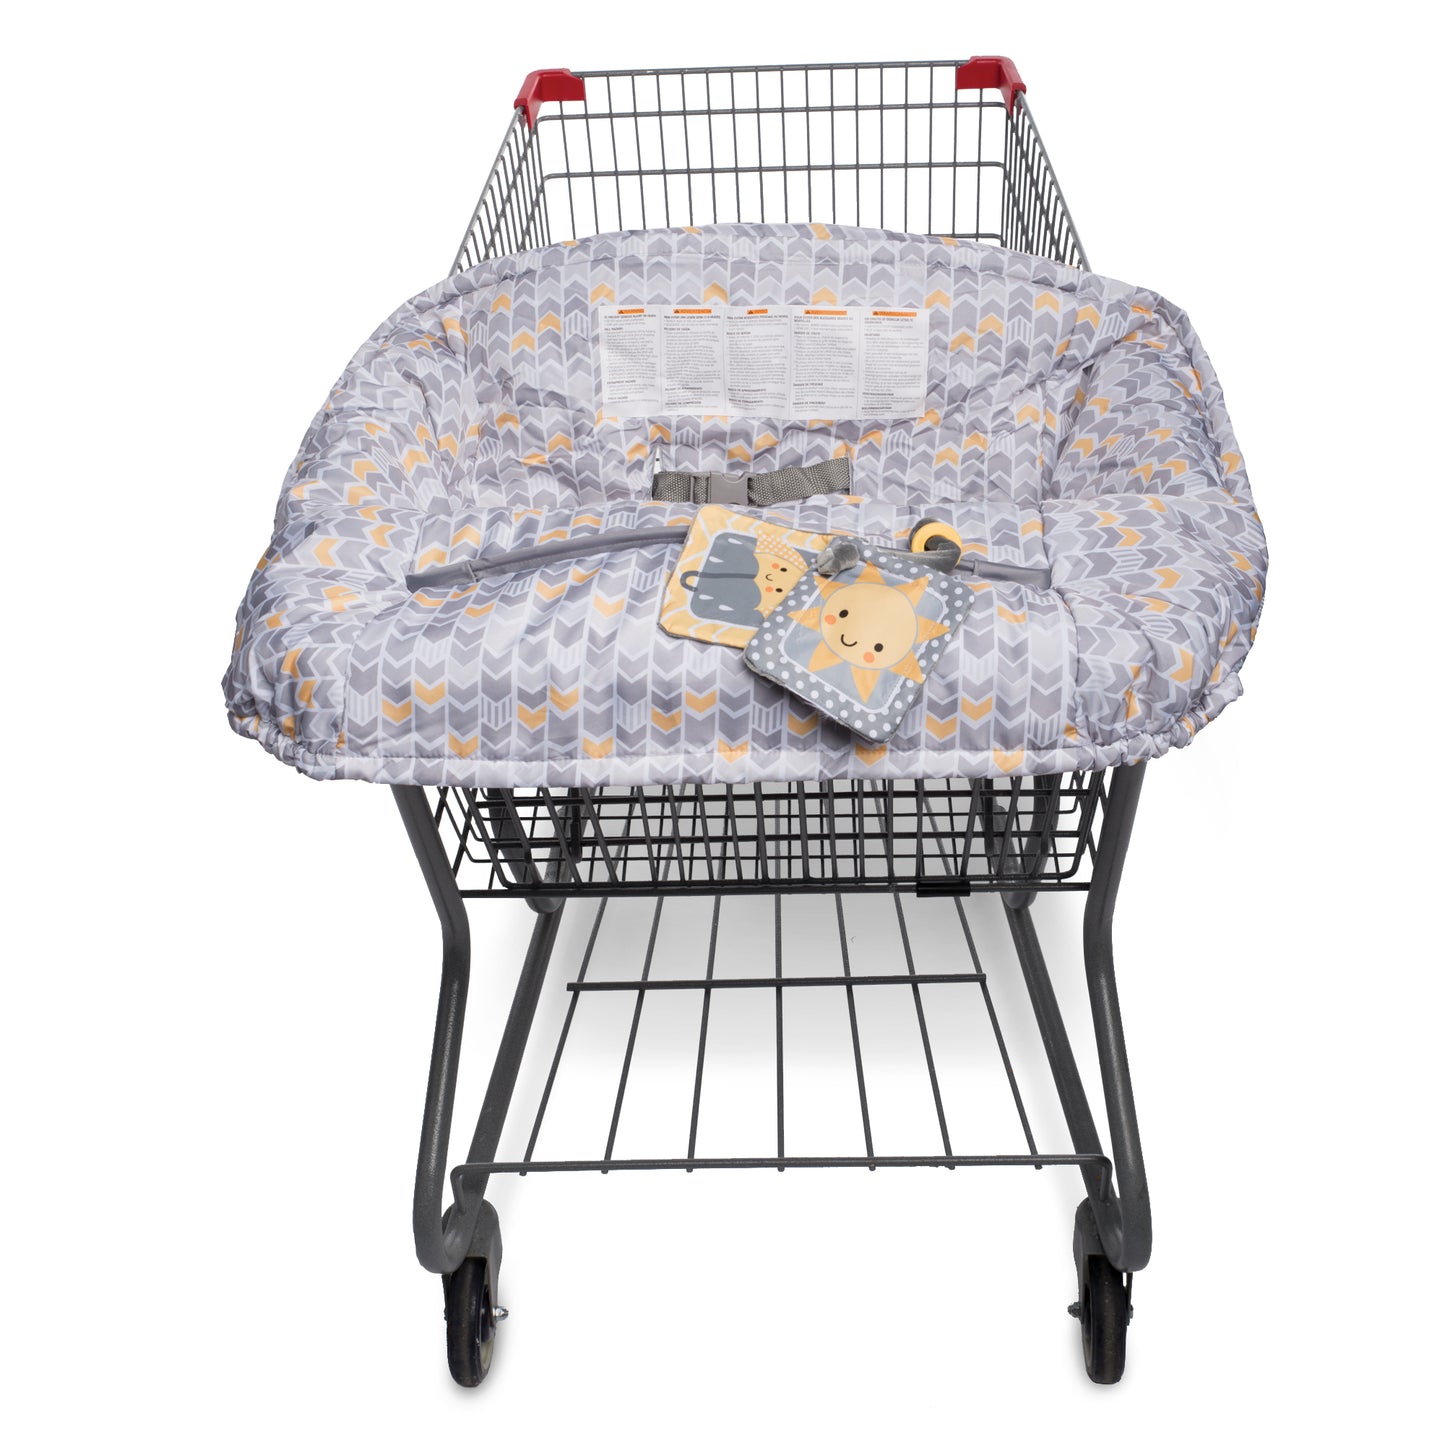 Shopping Cart/ High chair Cover (Cobertor de Carretilla y Silla)